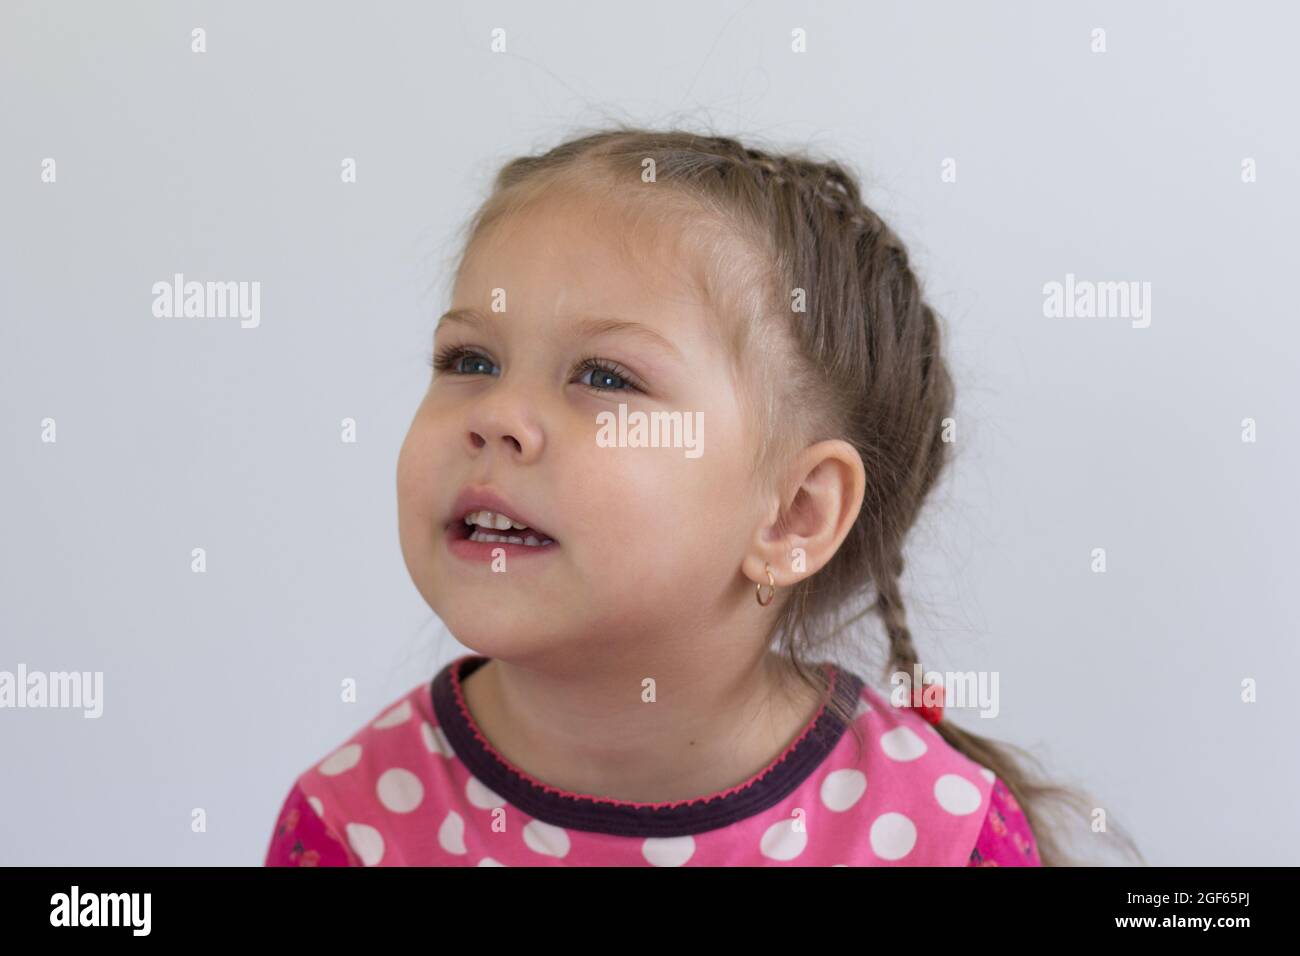 Retrato de un niño caucásico de tres años mirando a un lado con una mirada atenta sobre fondo blanco Foto de stock